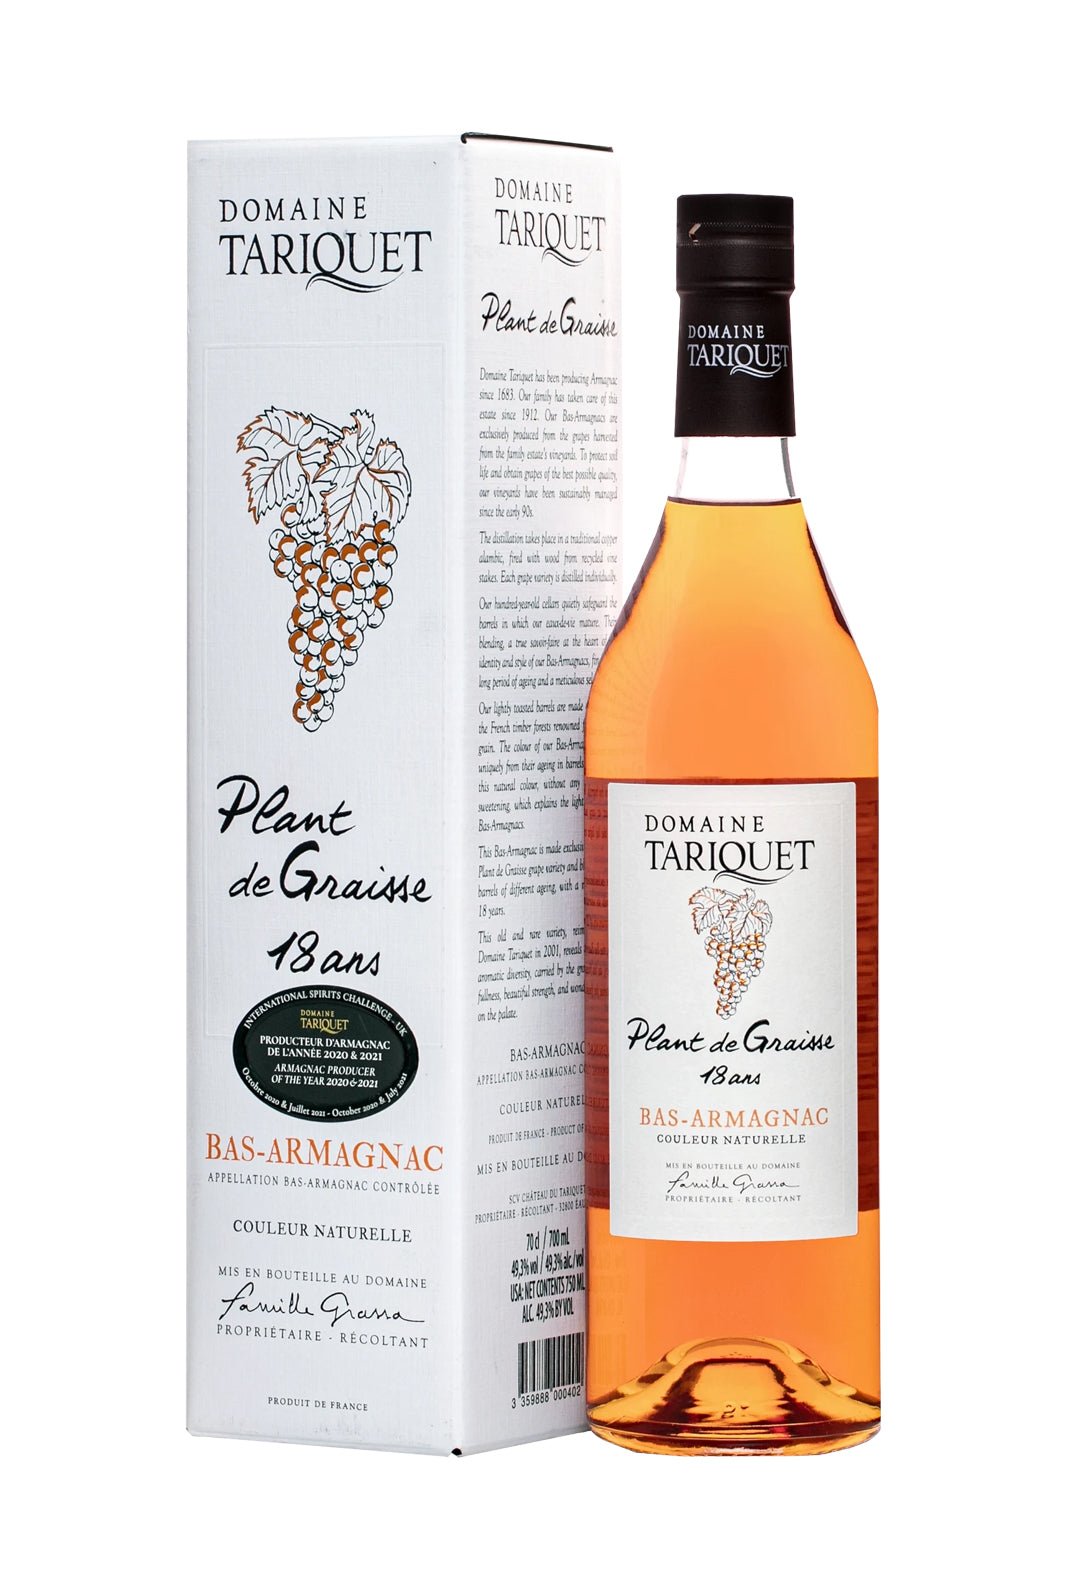 Tariquet plat de Graisse 18 years Bas-Armagnac 49.3% 700ml | Brandy | Shop online at Spirits of France